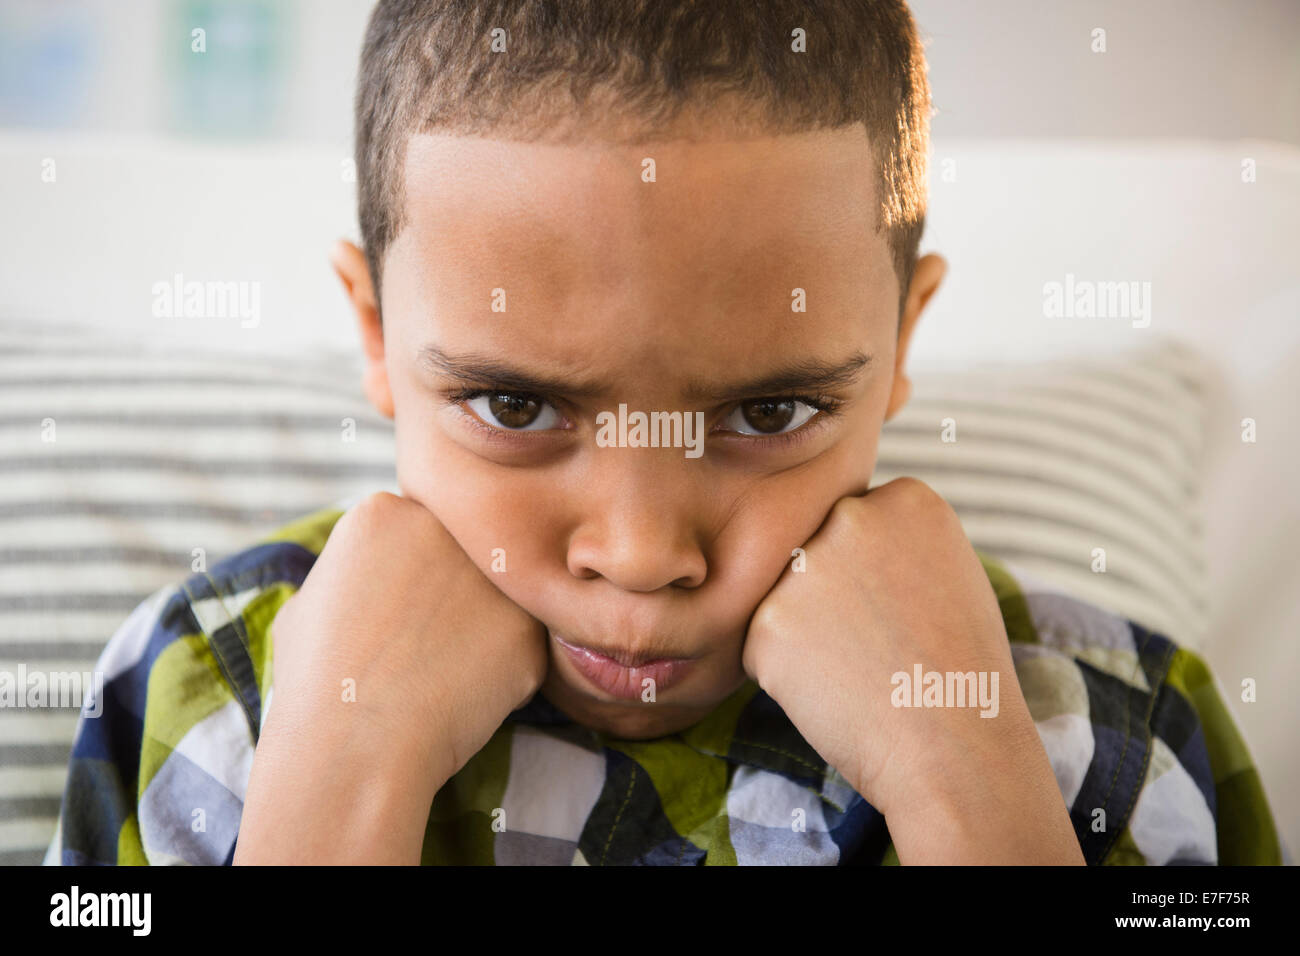 Mixed race boy pouting on sofa Stock Photo